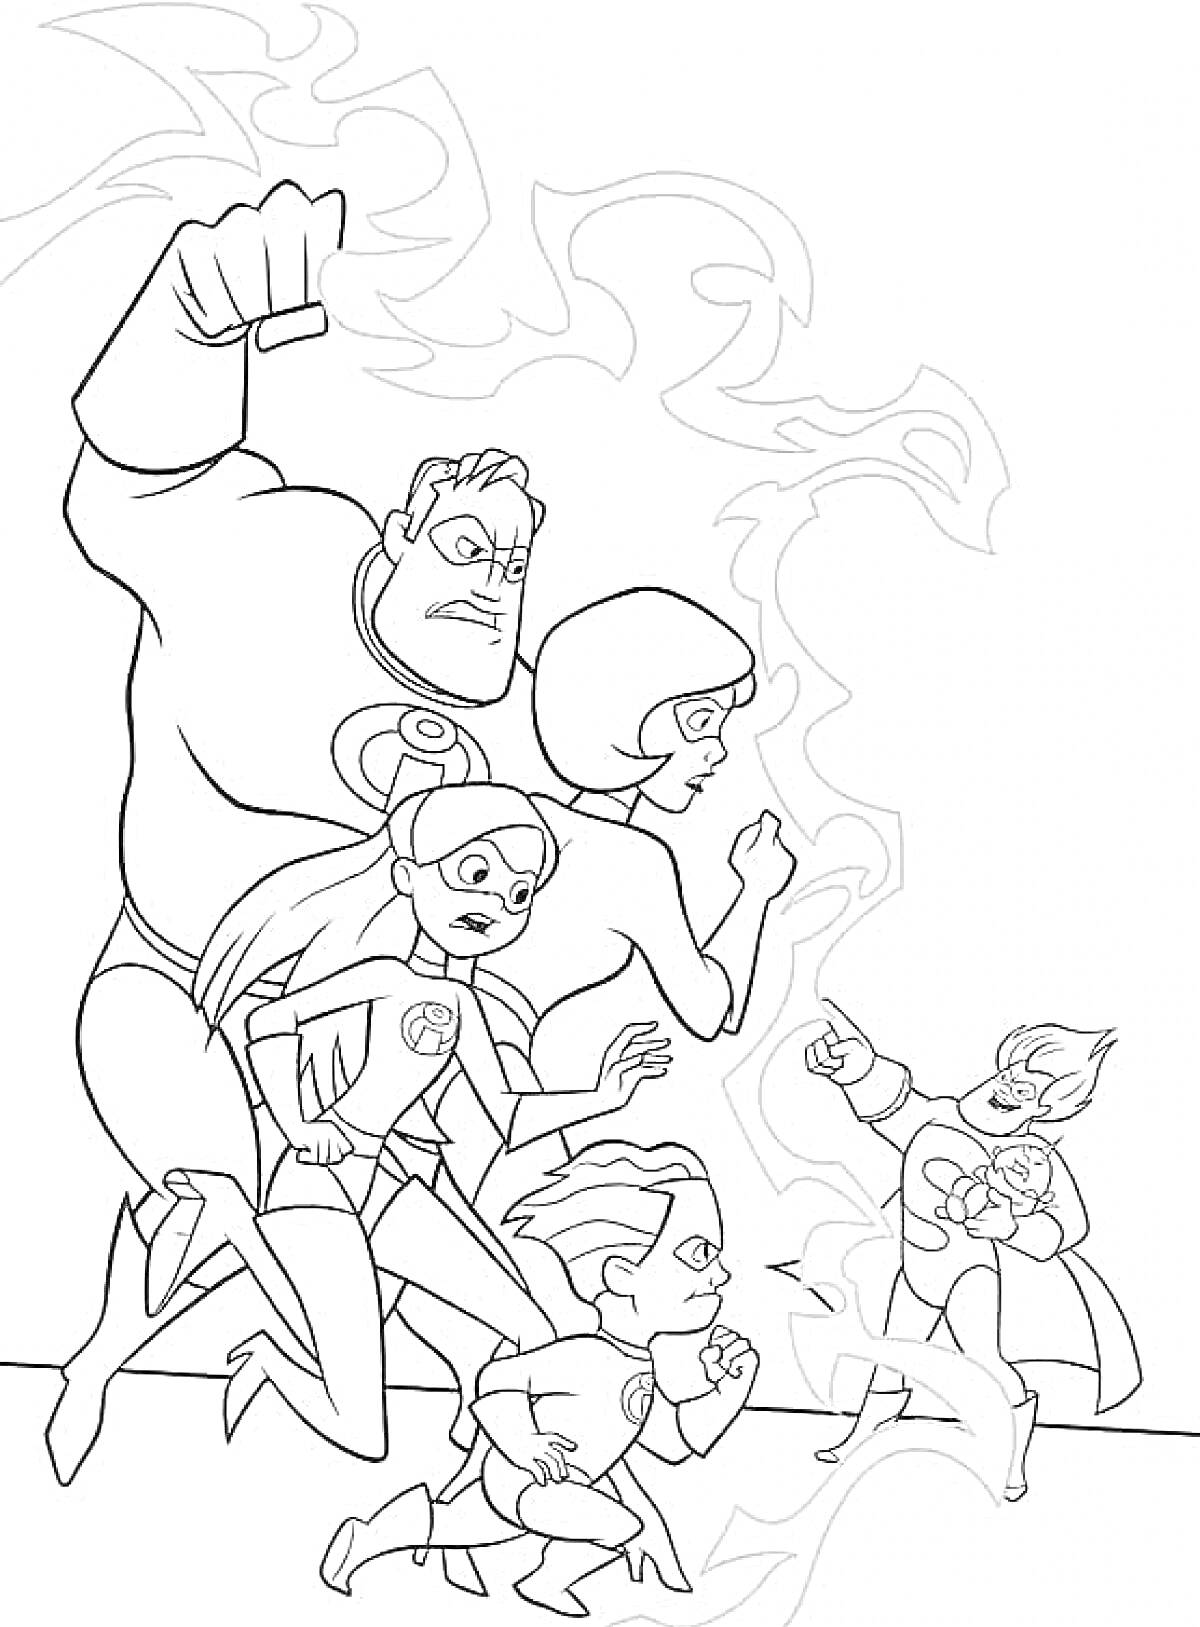 Раскраска Члены команды Суперсемейка бегут и демонстрируют свои суперспособности